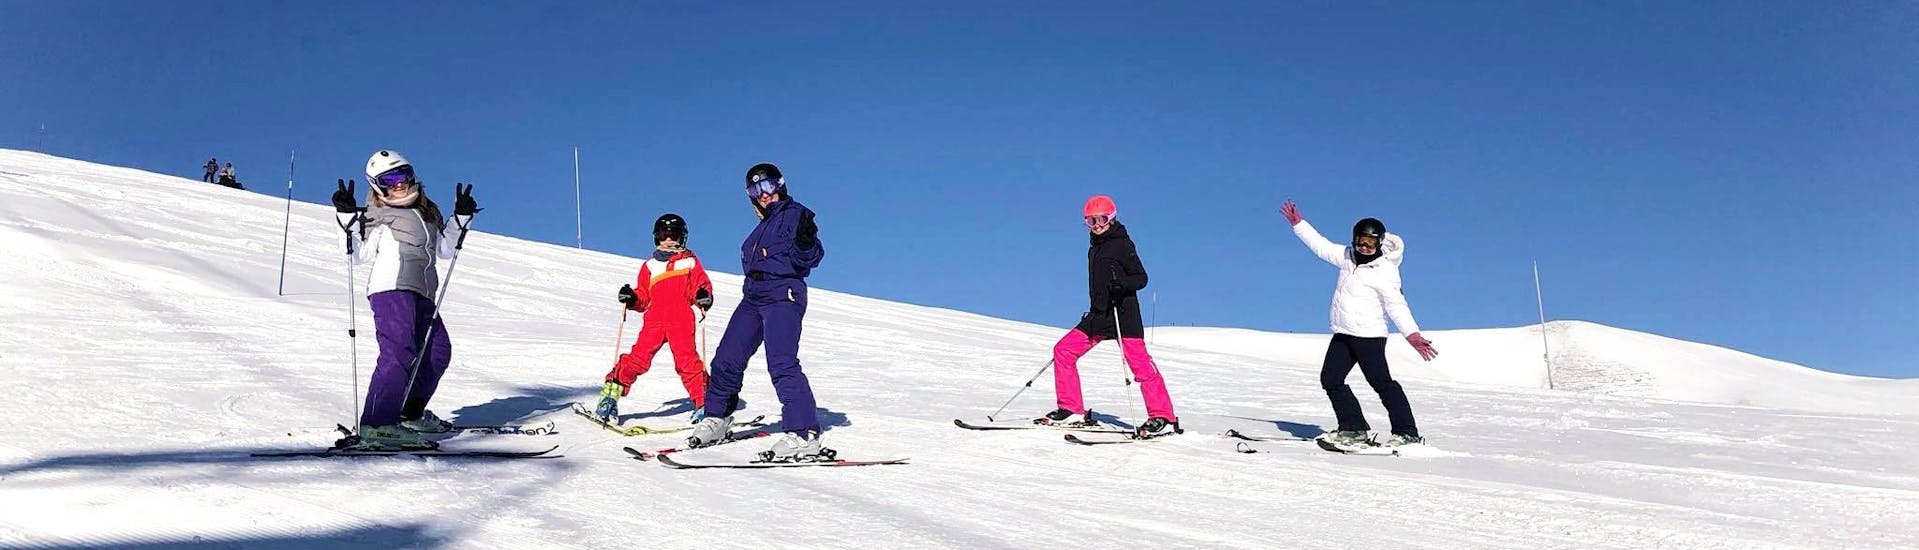 adult-ski-lessons-holidays-esi-la-toussuire-hero